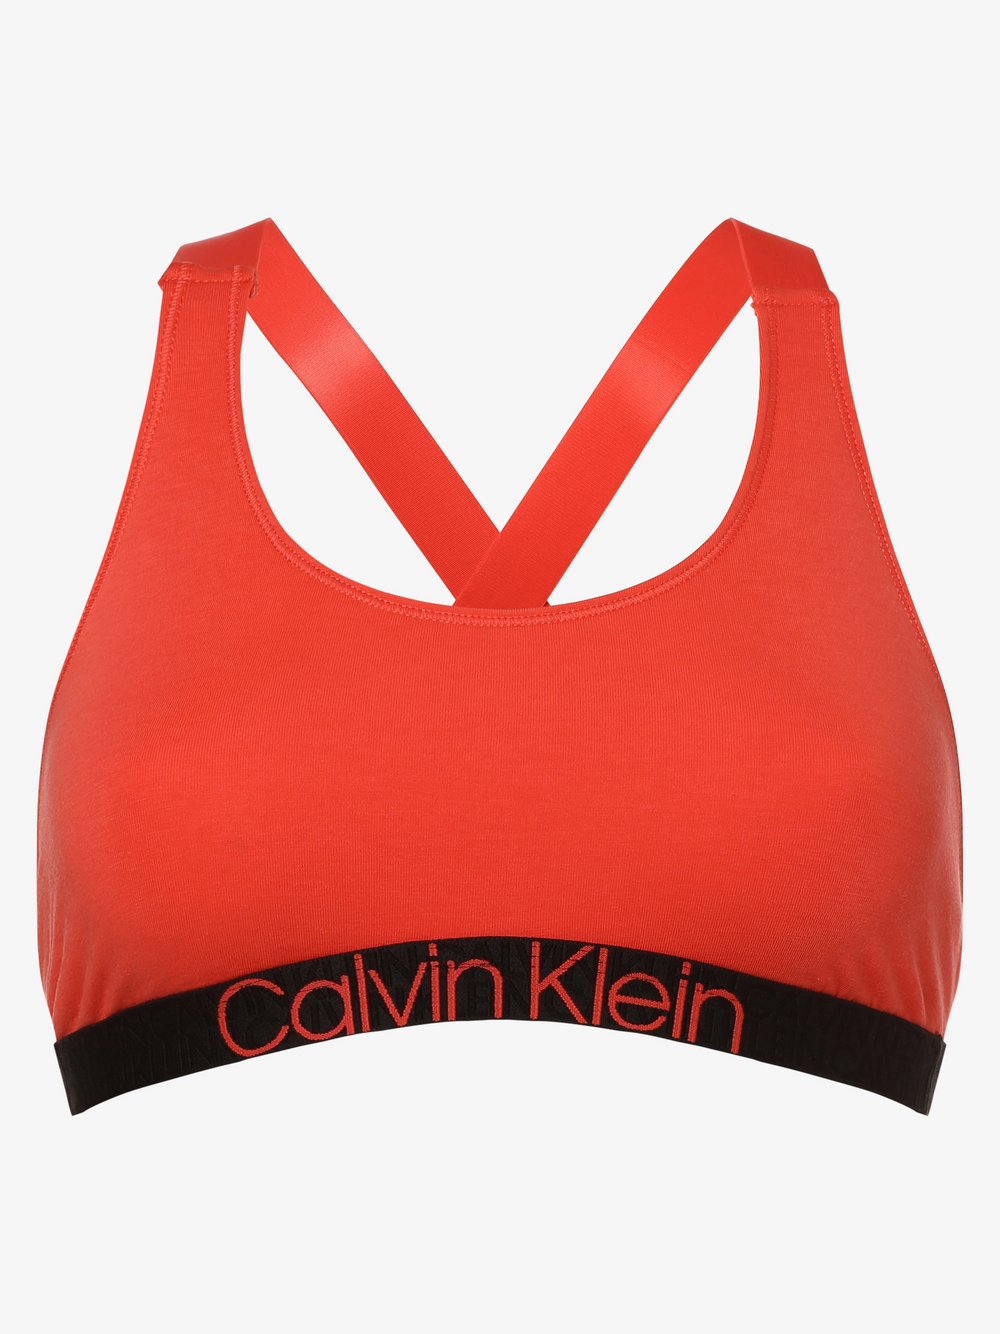 Calvin Klein - Gorset damski, pomarańczowy|czerwony